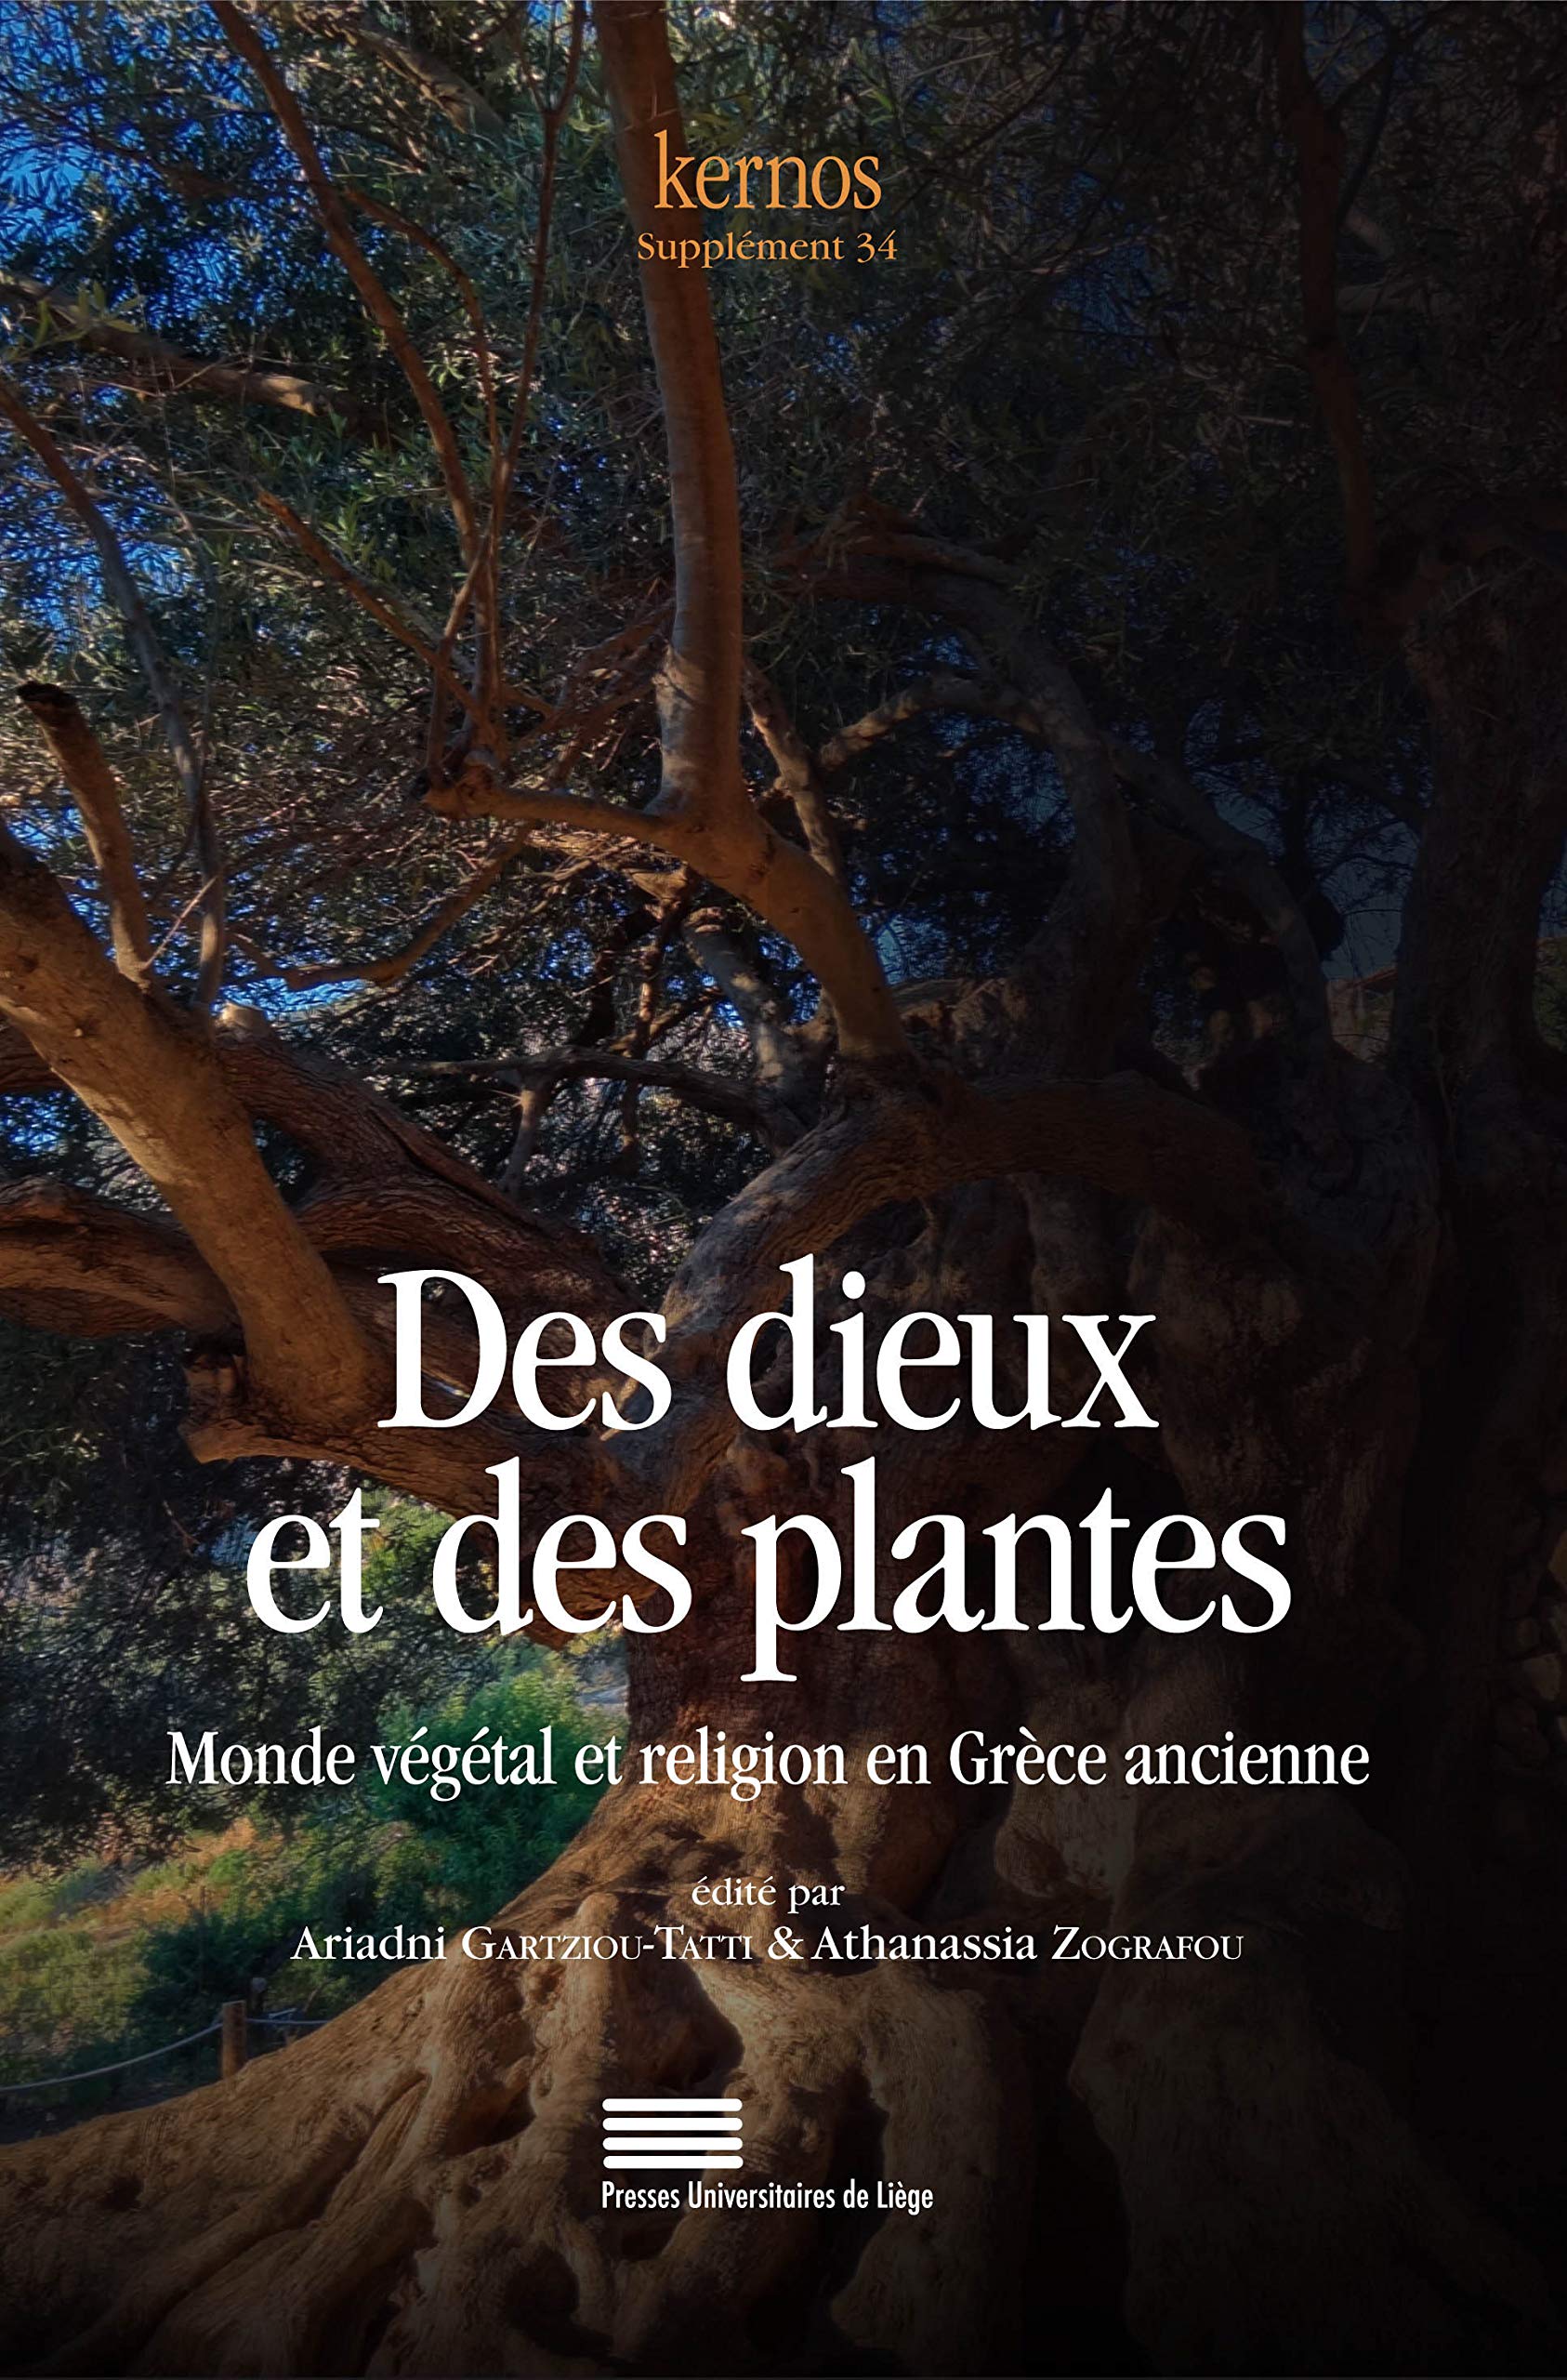 Des dieux et des plantes. Monde végétal et religion en Grèce ancienne, 2020, 348 p.